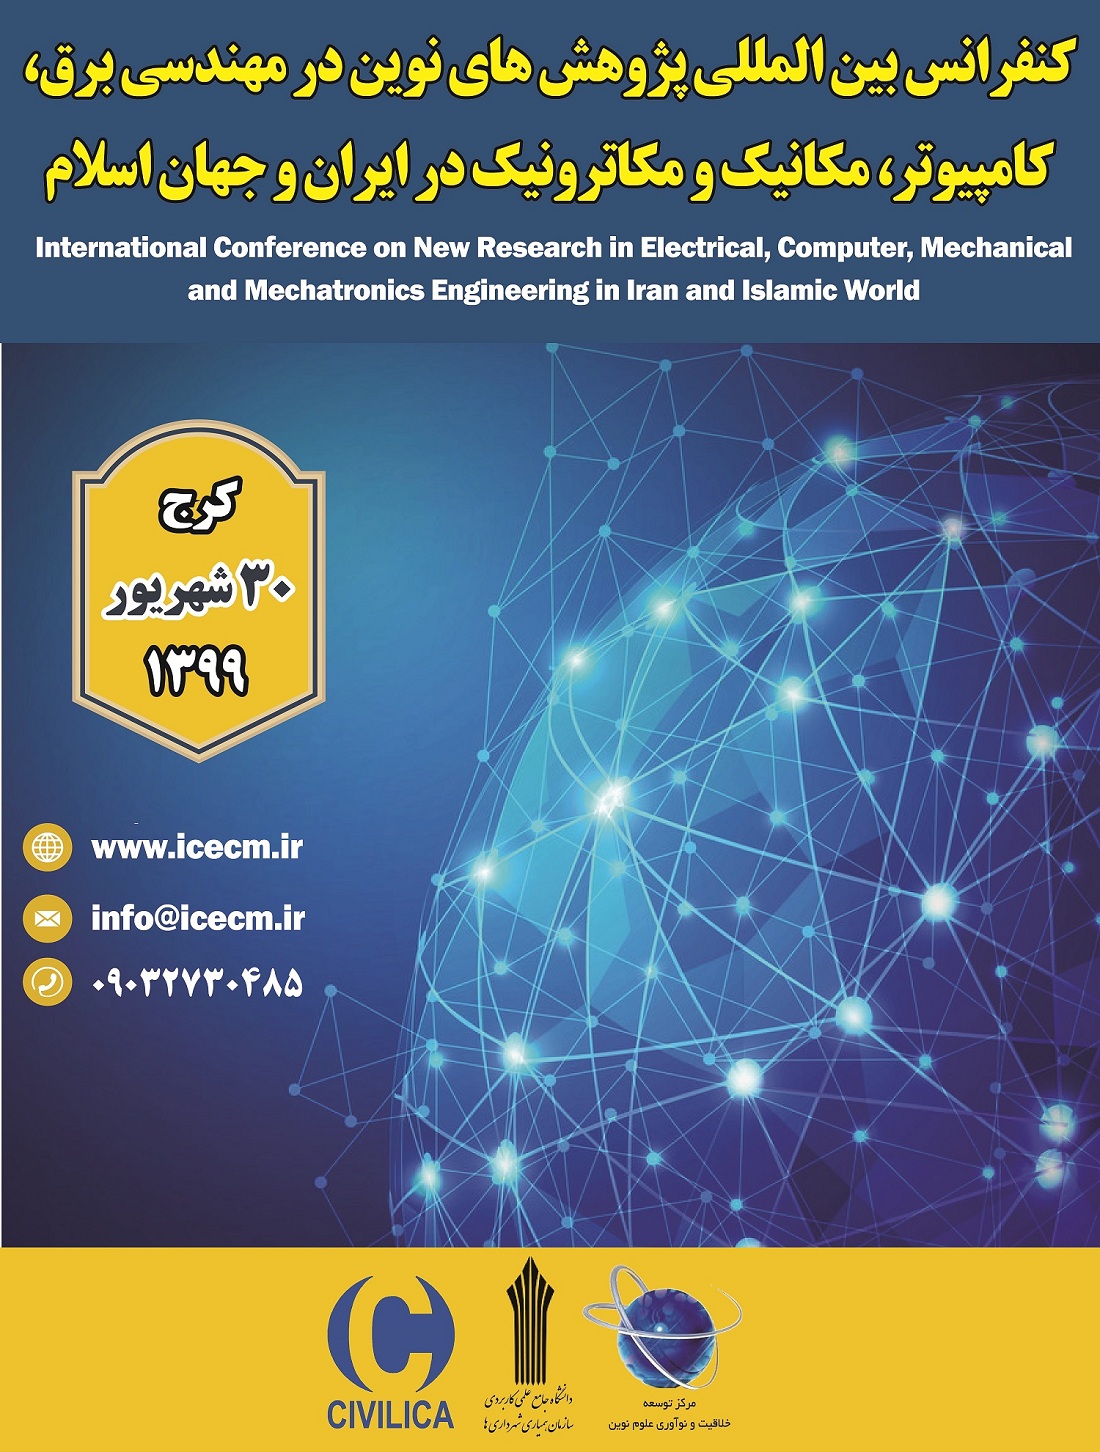 پوستر کنفرانس بین المللی پژوهش های نوین در مهندسی برق، کامپیوتر، مکانیک و مکاترونیک در ایران و جهان اسلام